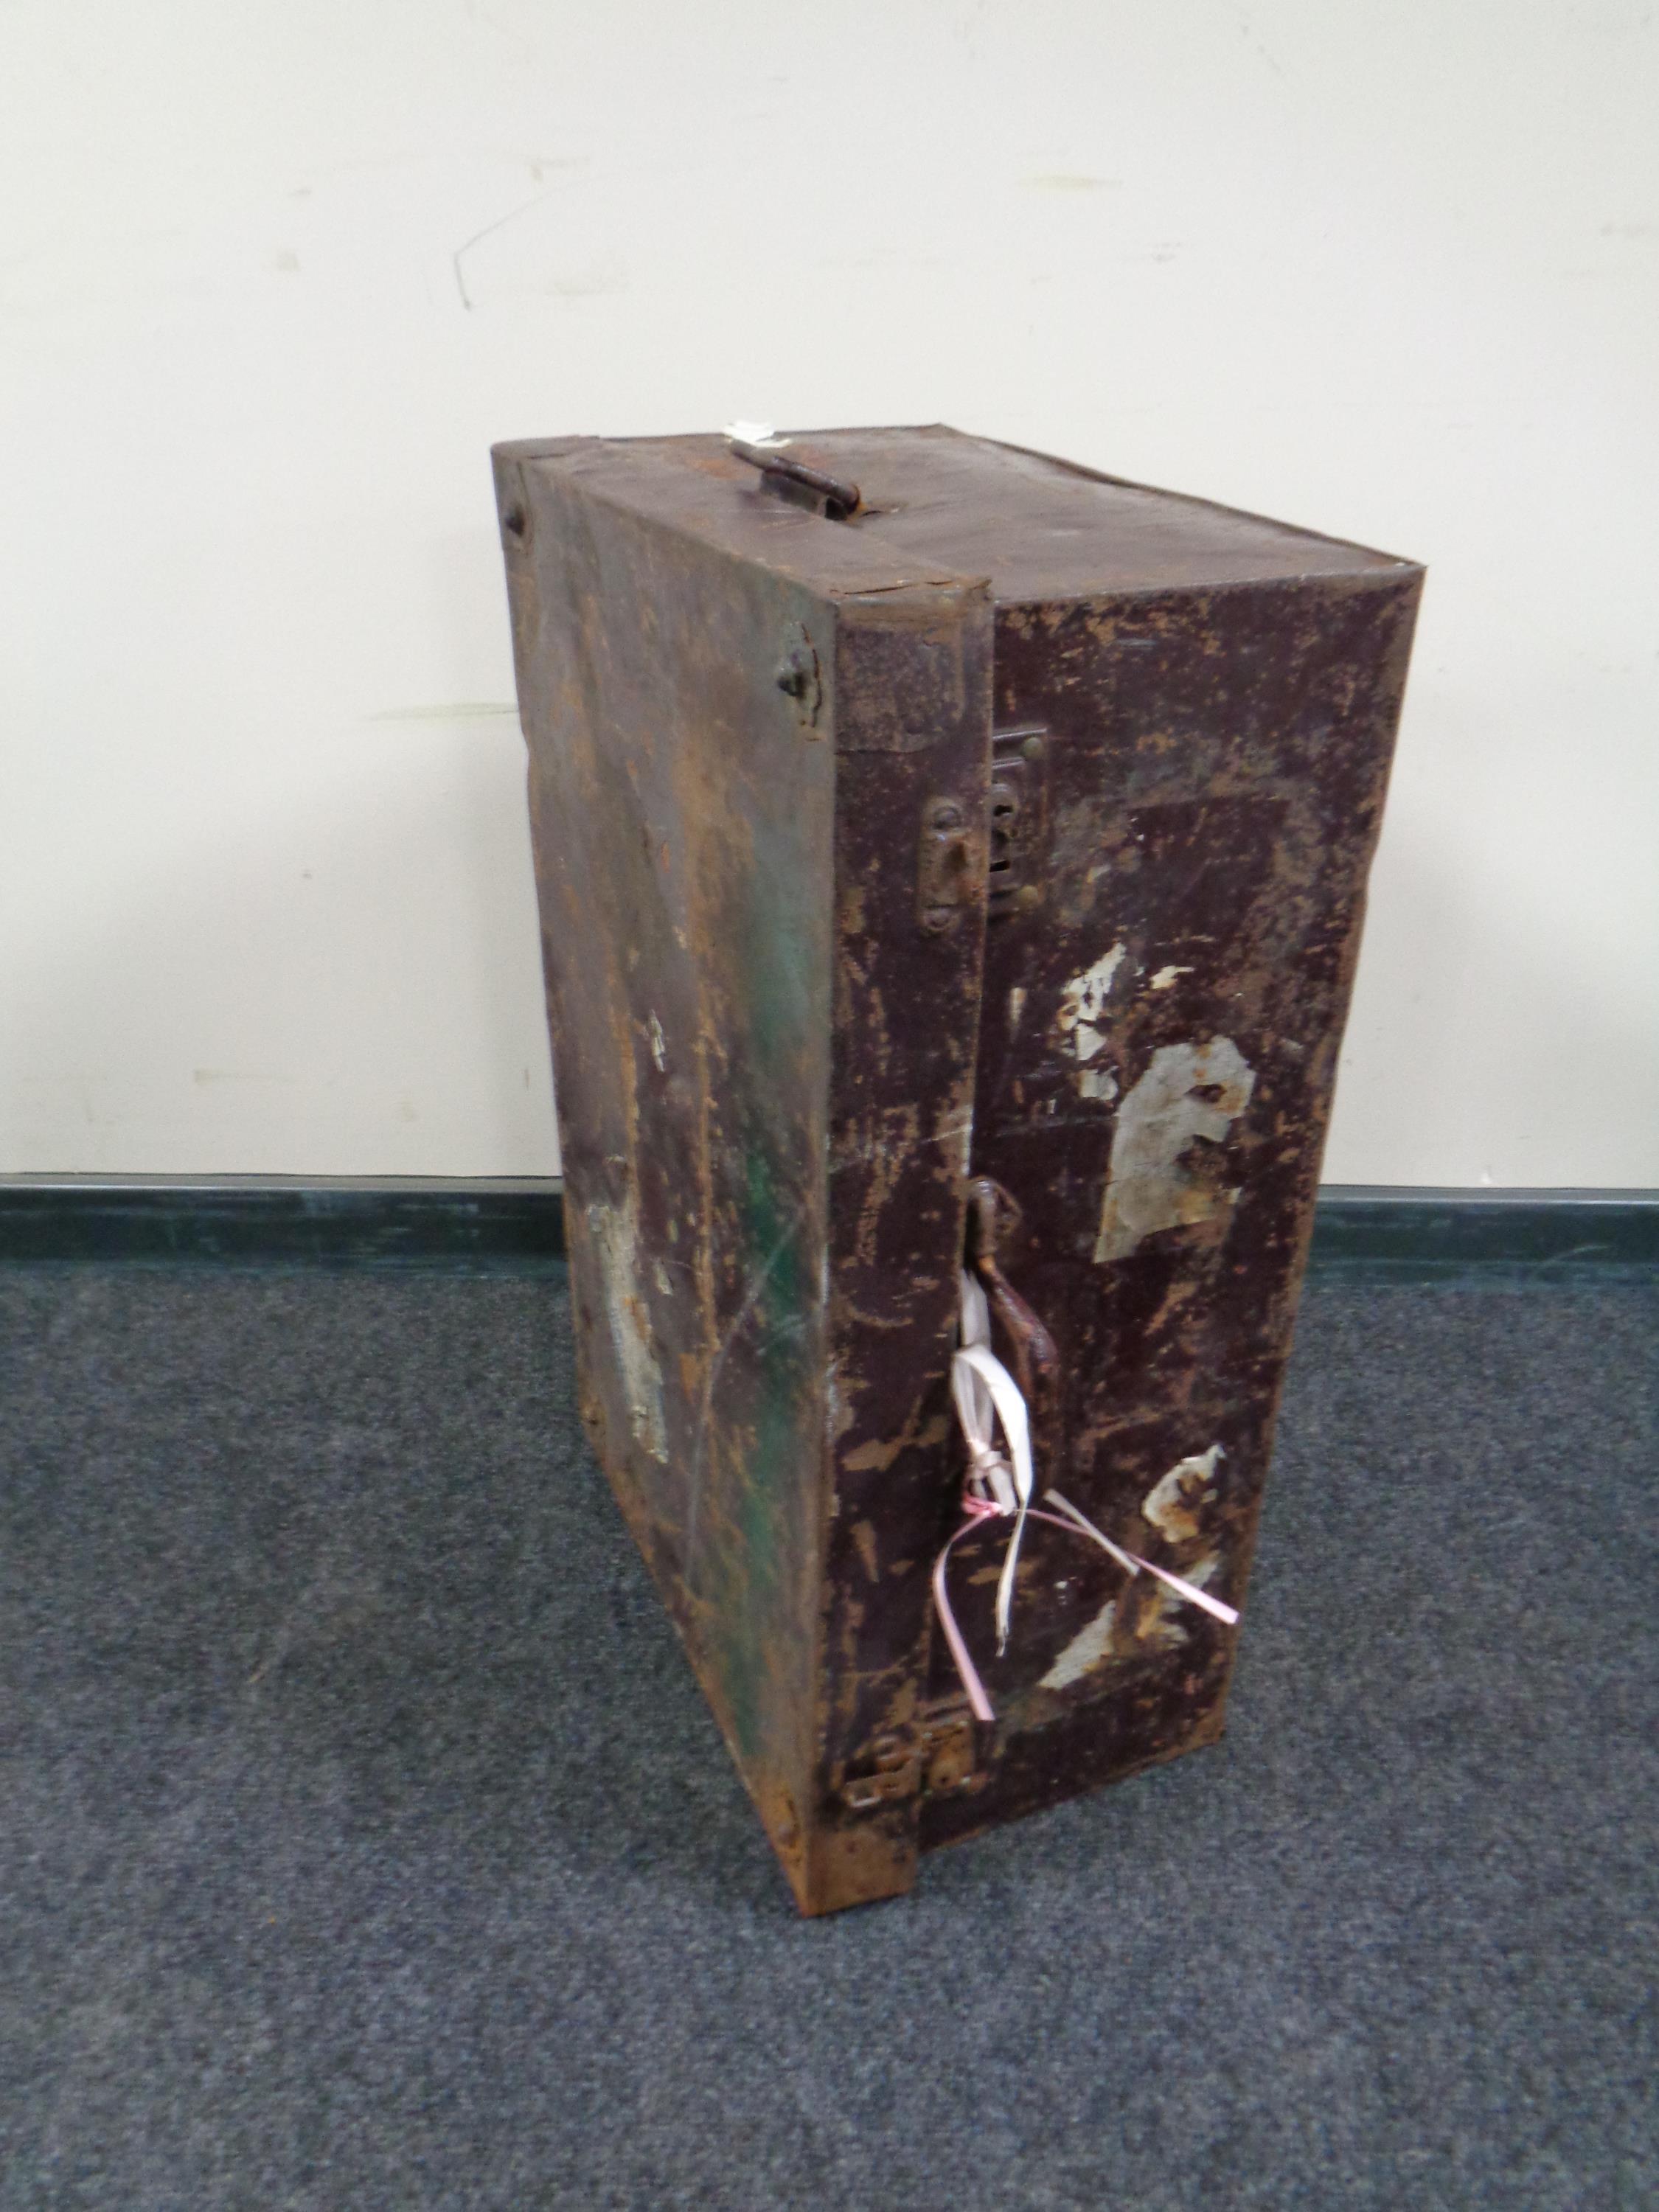 An antique tin case